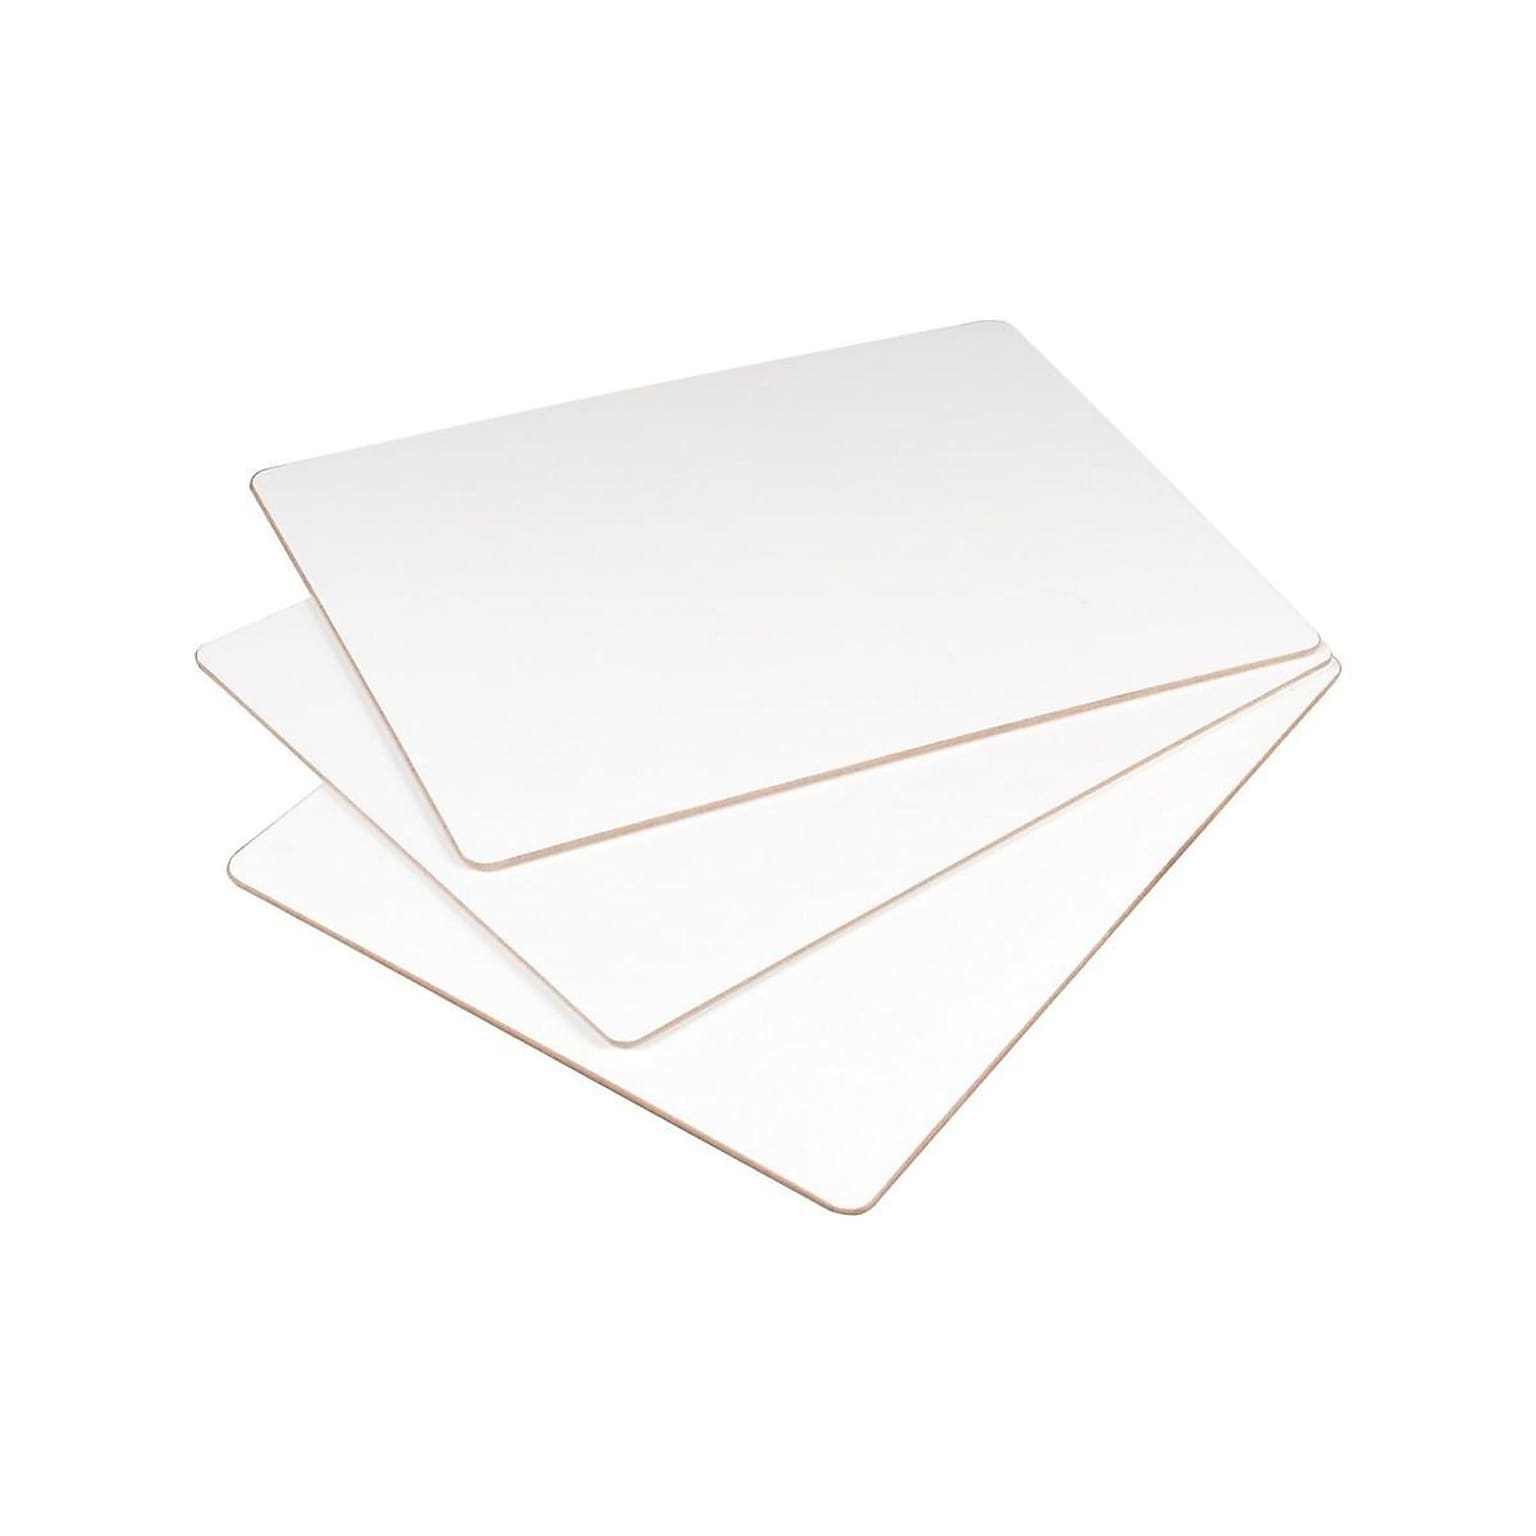 Essentials Dry-Erase Whiteboards, 1 x 1 (629-24)